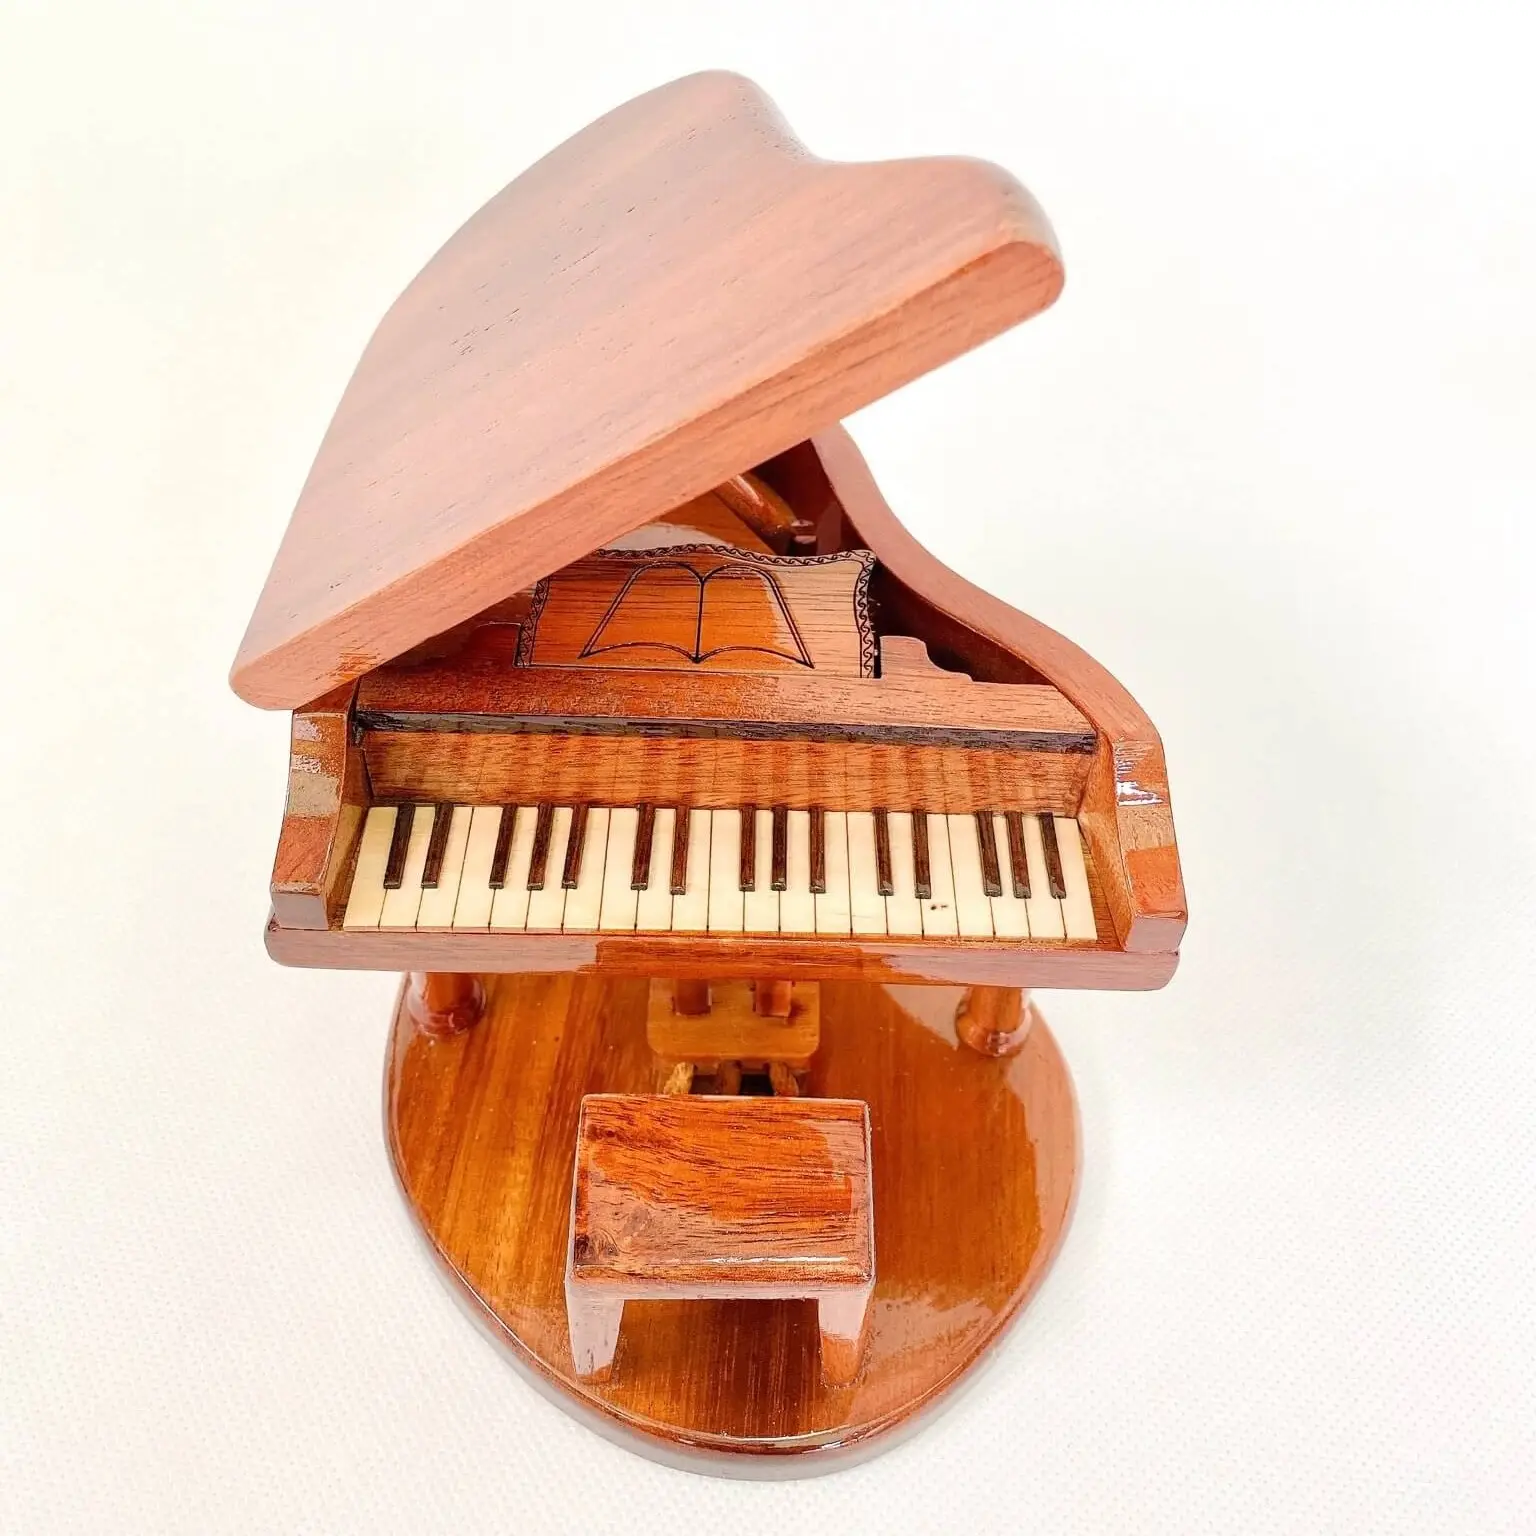 Top ausgewählte kleine Holz Musik instrumente zum Verkauf Holz exquisite Miniatur Klavier Innen dekorative Instrument